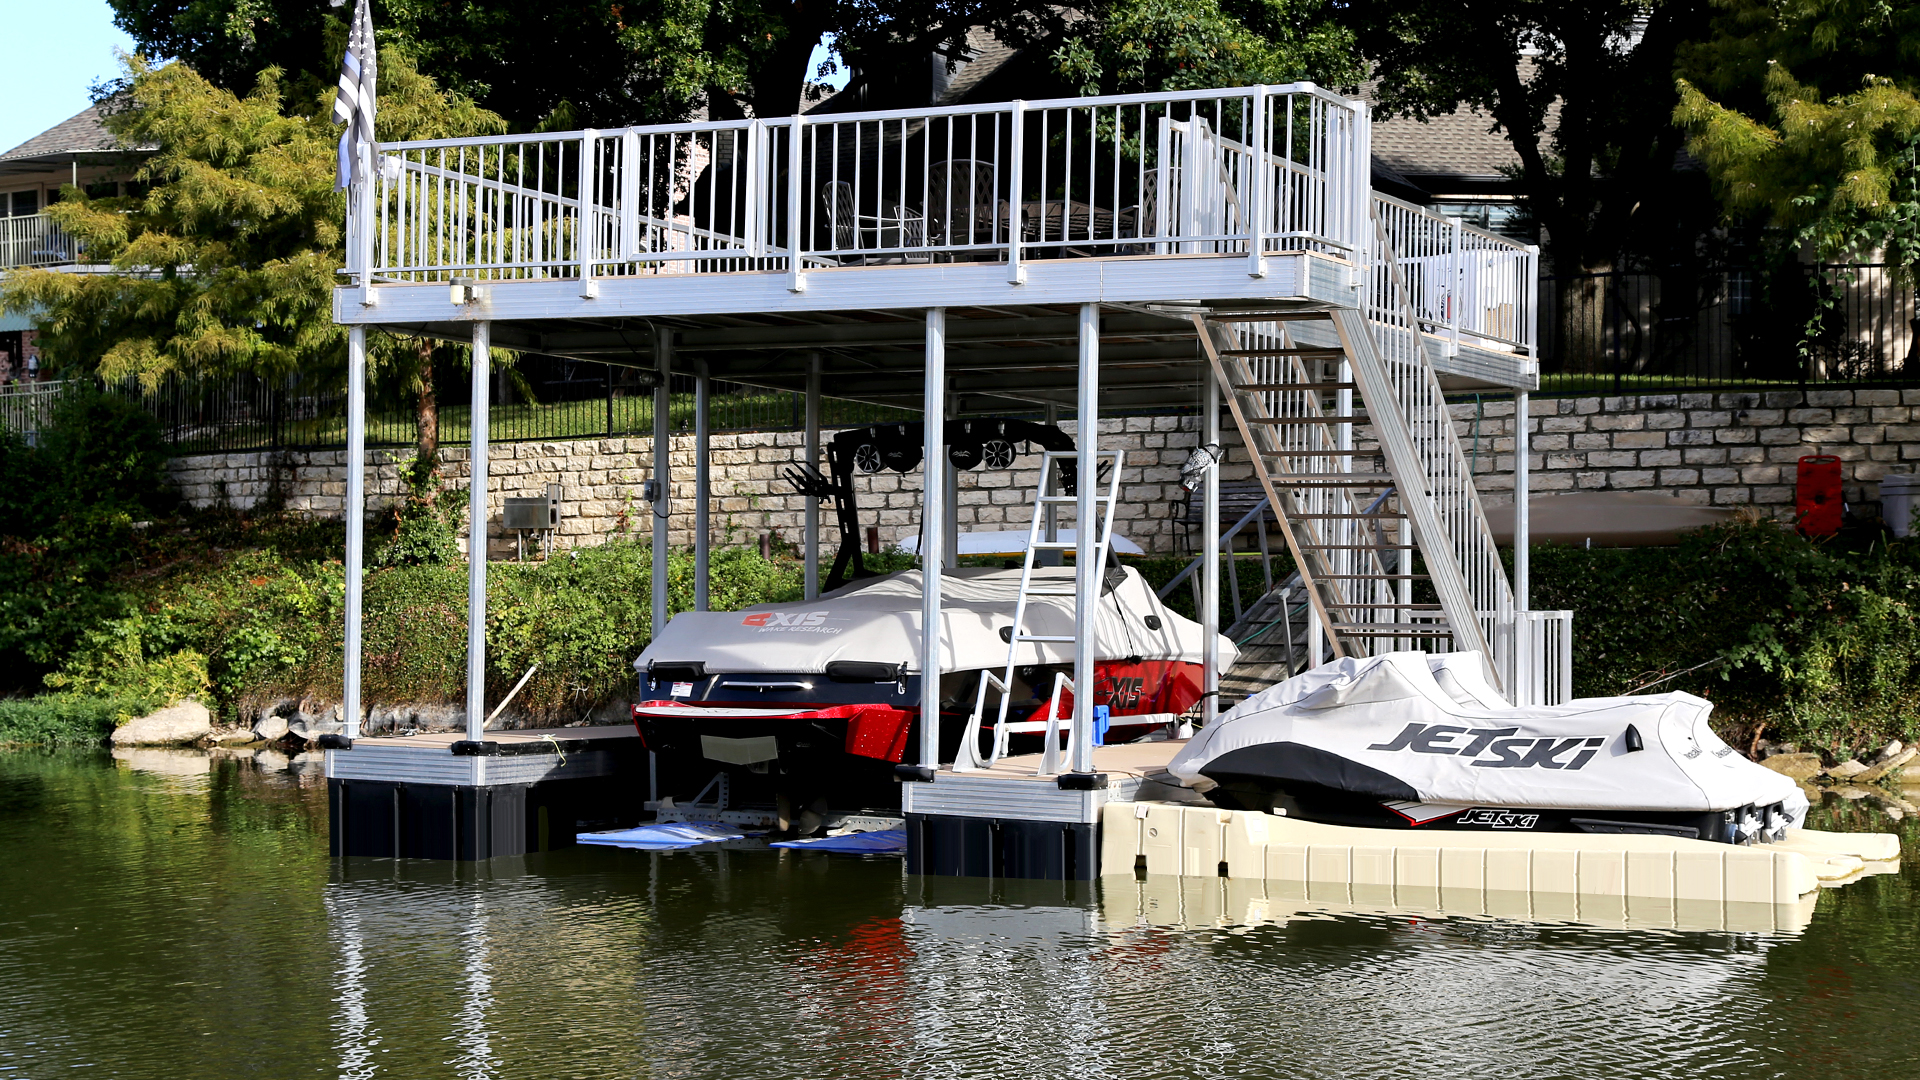 United Boat Docks USA – Make your dock dreams come true.